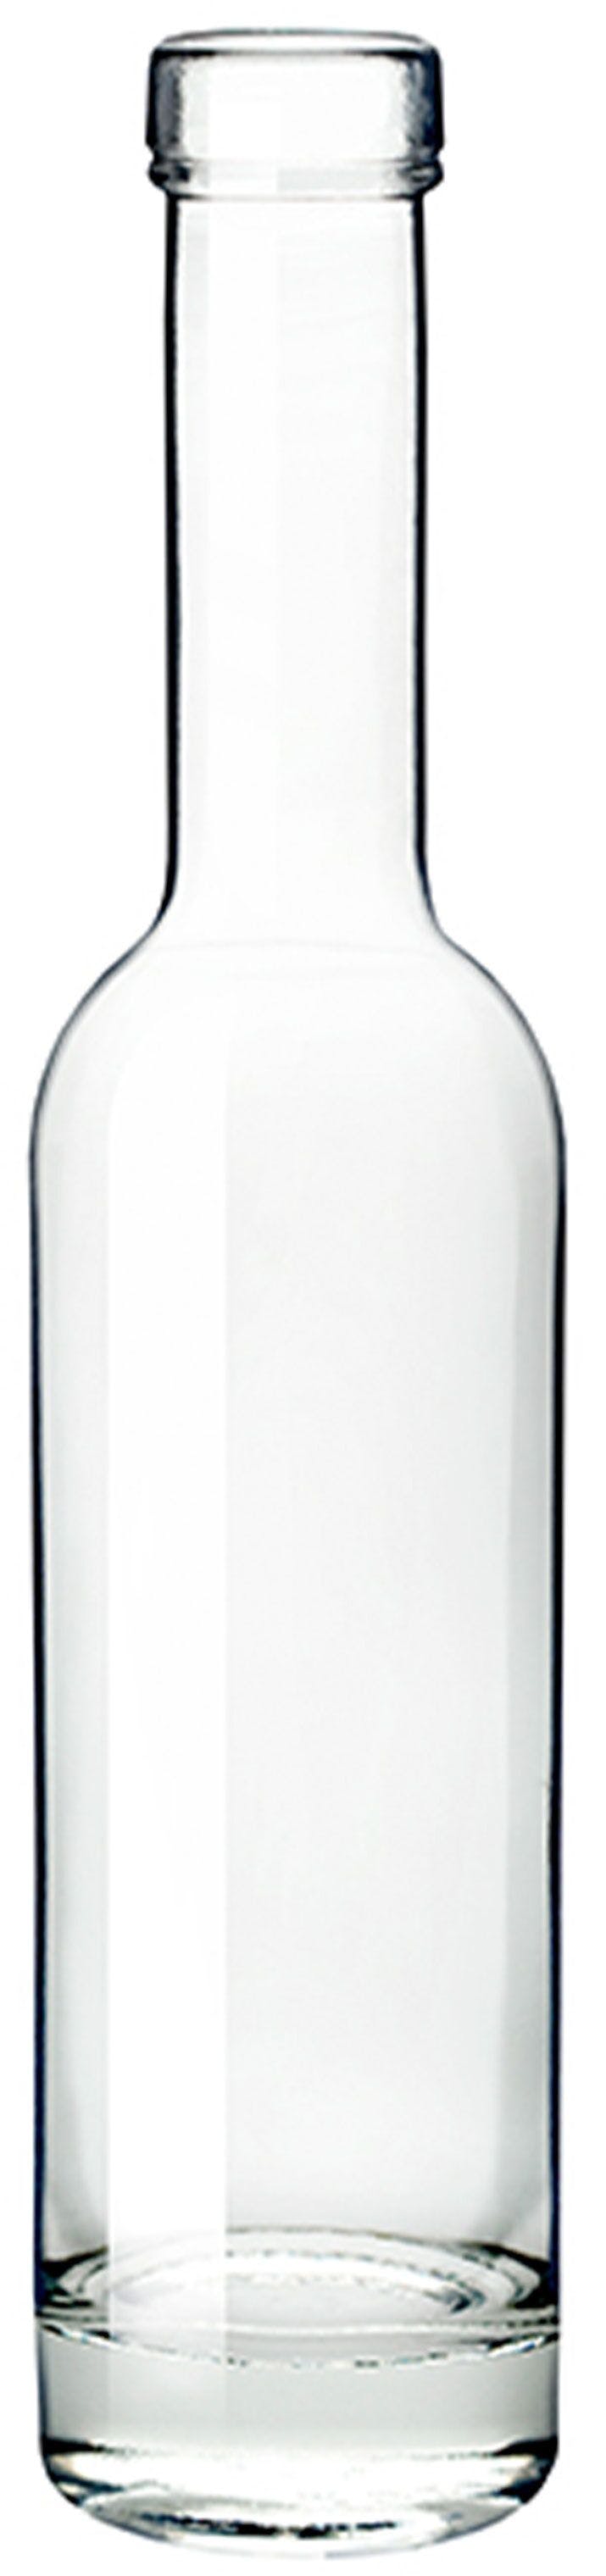 Botella SERENADE  ALTA 200 ml BG-corcho